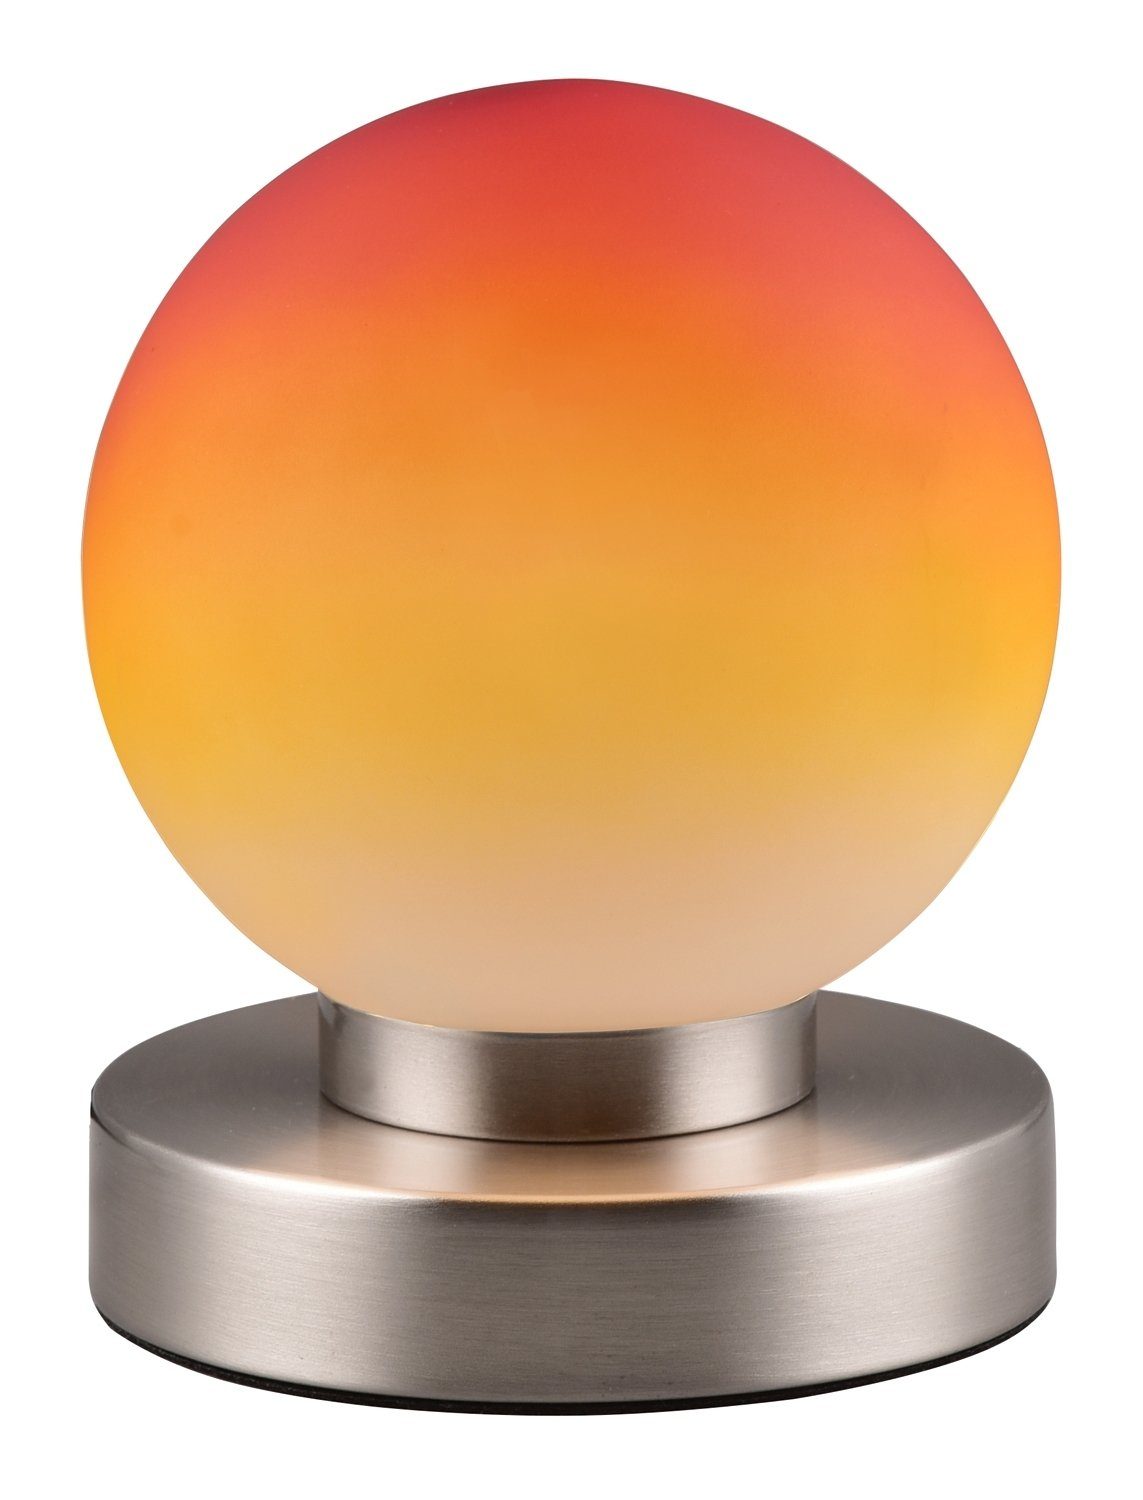 Reality Leuchten Tischleuchte PRESTON, 1-flammig, H 15 cm, Nickelfarben,  Orange, ohne Leuchtmittel, Metall, Glasschirm, Touchsensor